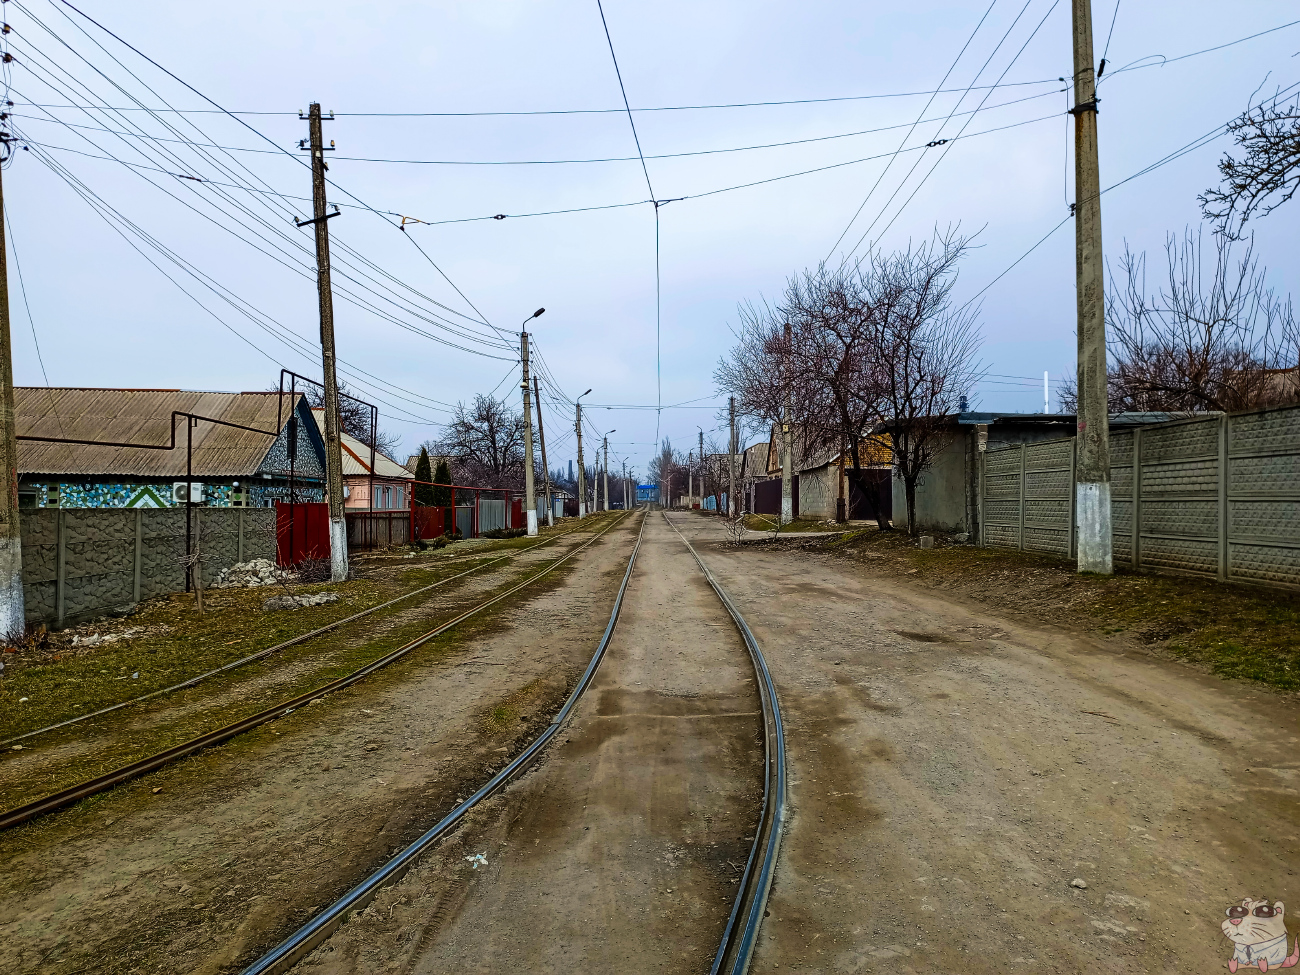 Jenakijevo — Tram lines